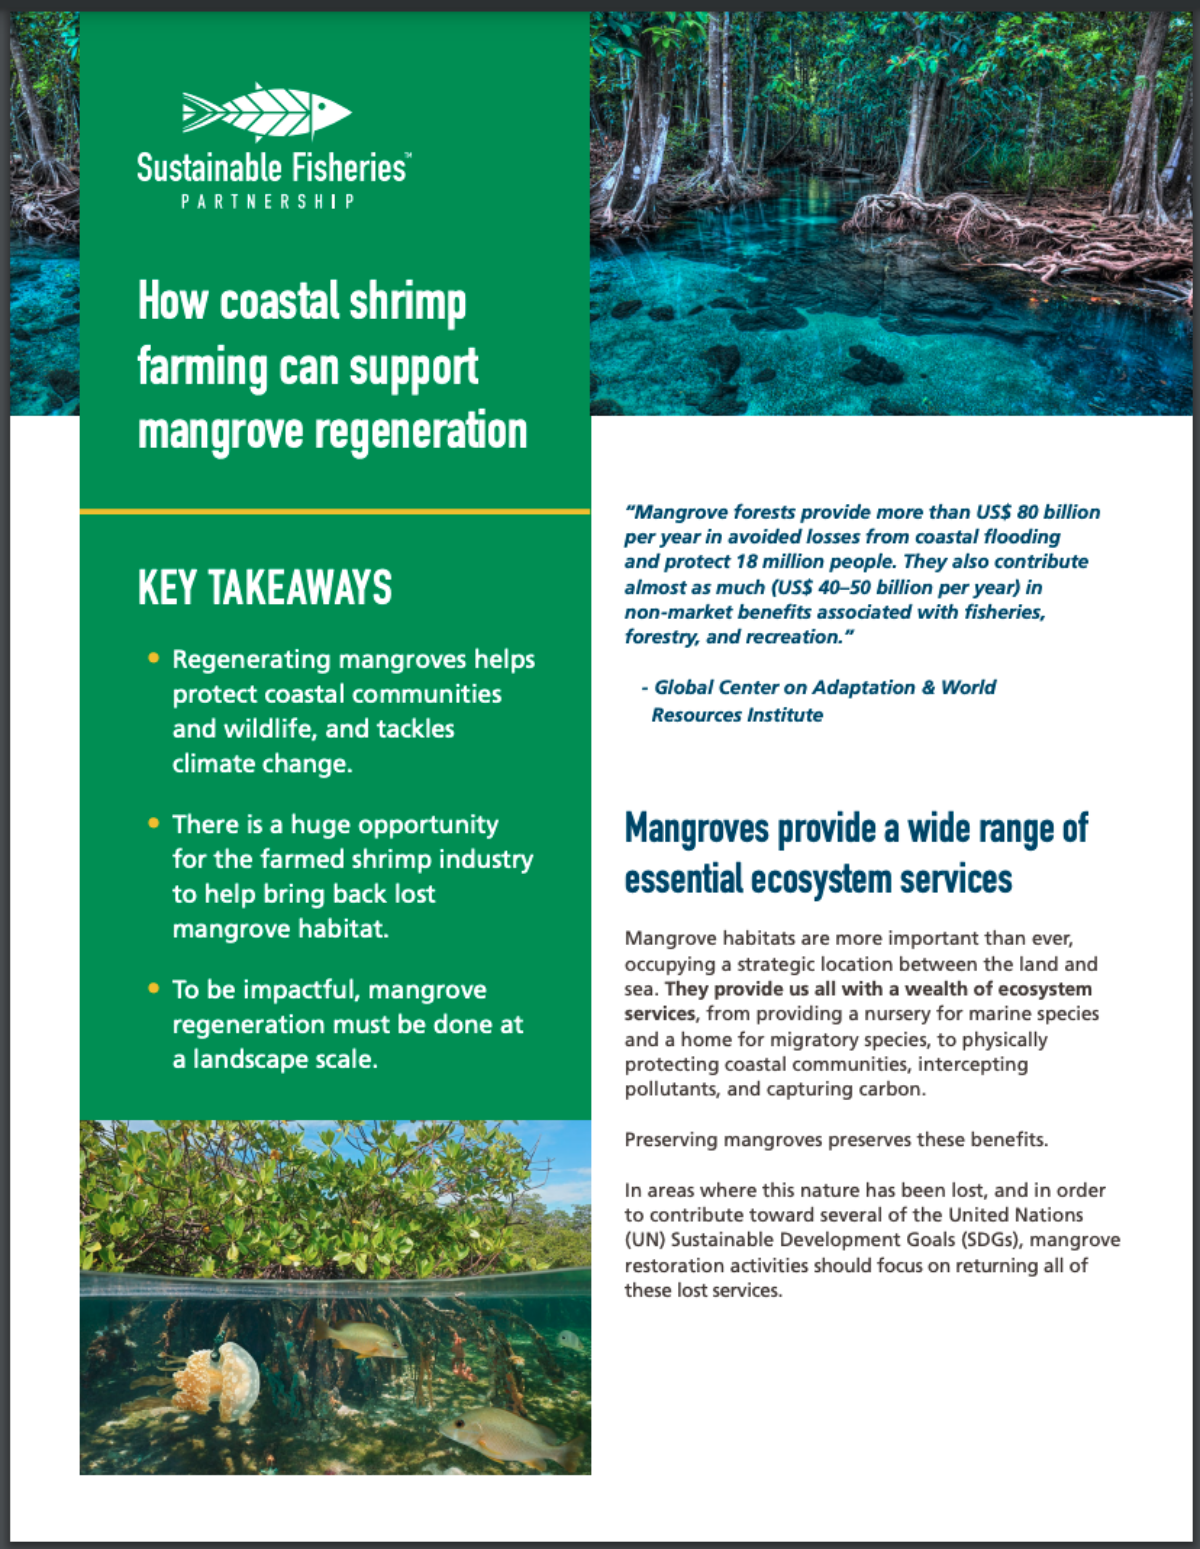 Sesión informativa sobre la cría de camarón y la regeneración de los manglares